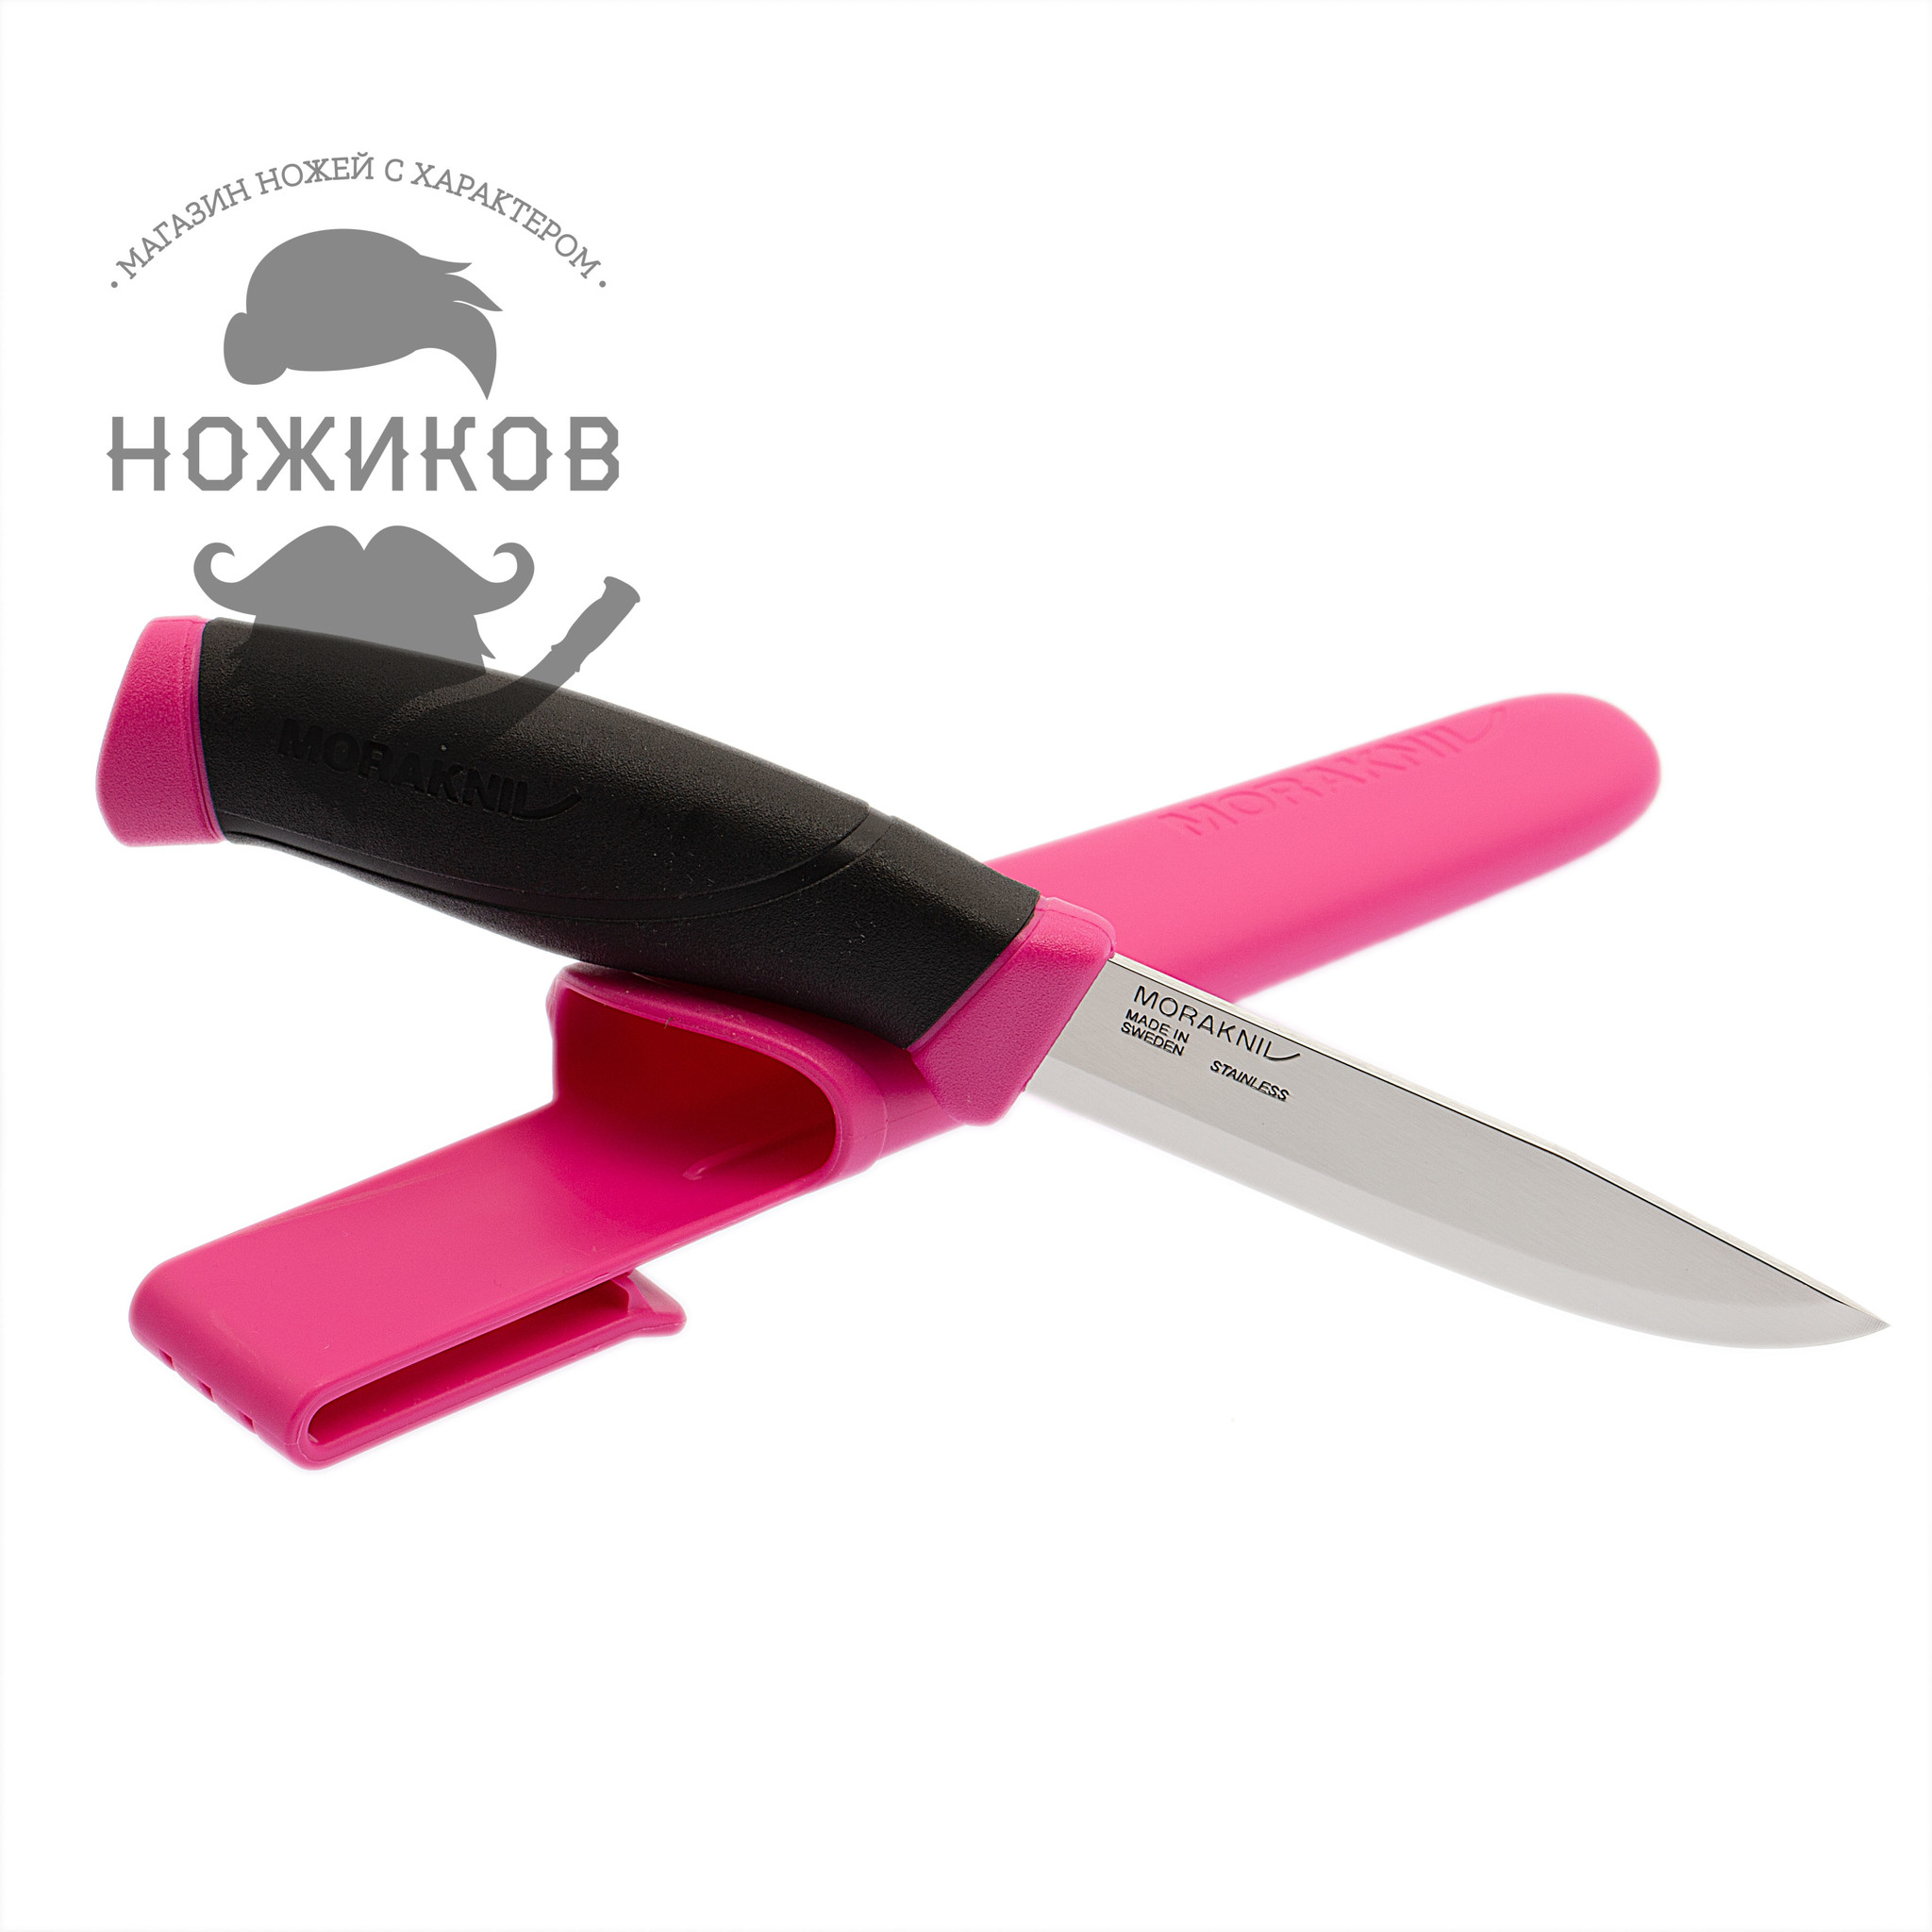 фото Нож с фиксированным лезвием morakniv companion magenta, сталь sandvik 12c27, рукоять резина/пластик, пурпурный